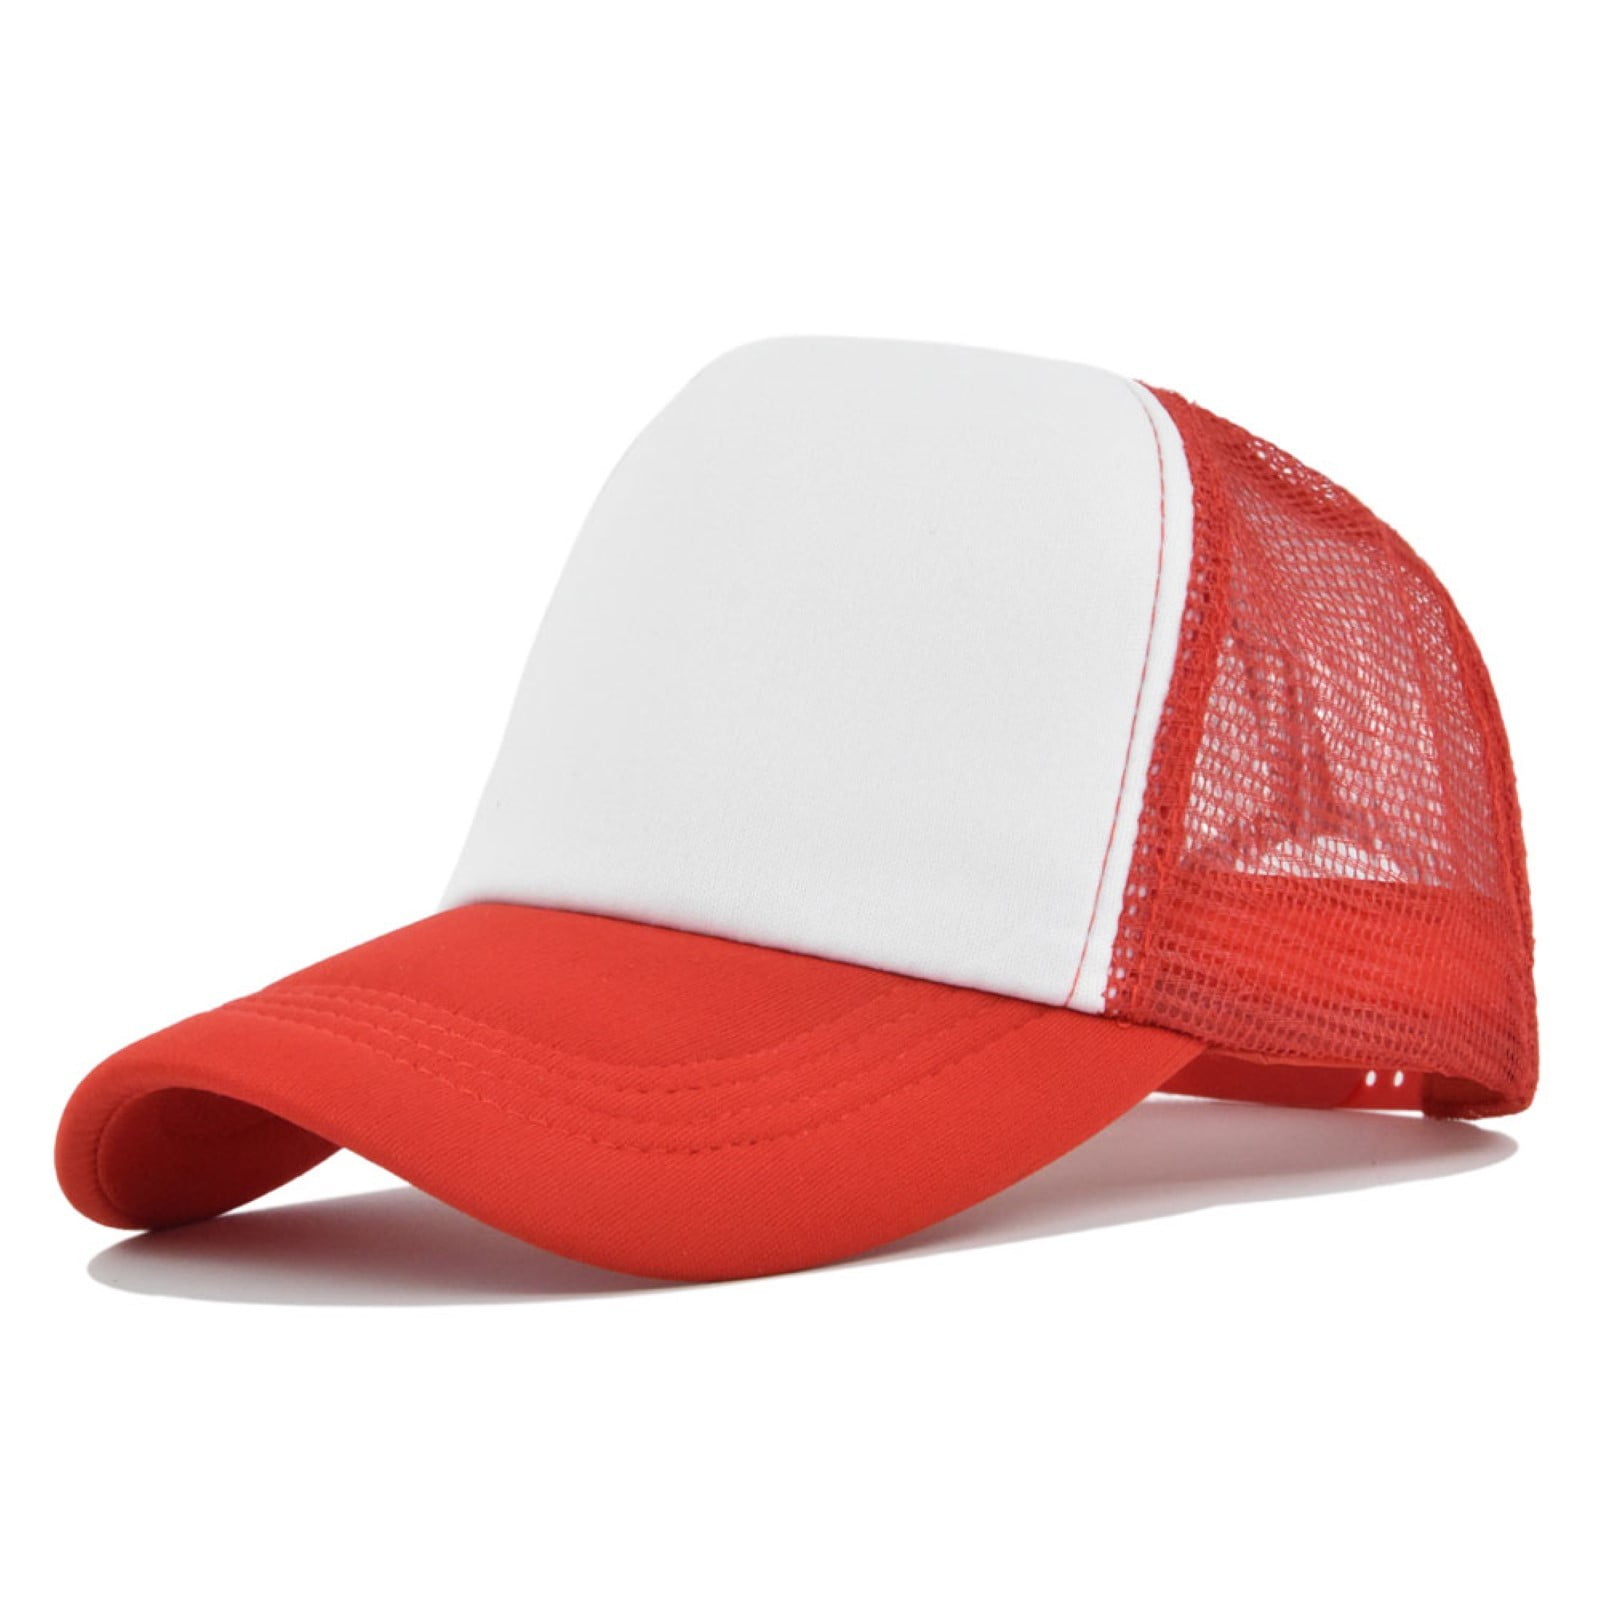 NIUREDLTD Men's And Women's Adjustable Baseball Cap Solid Color